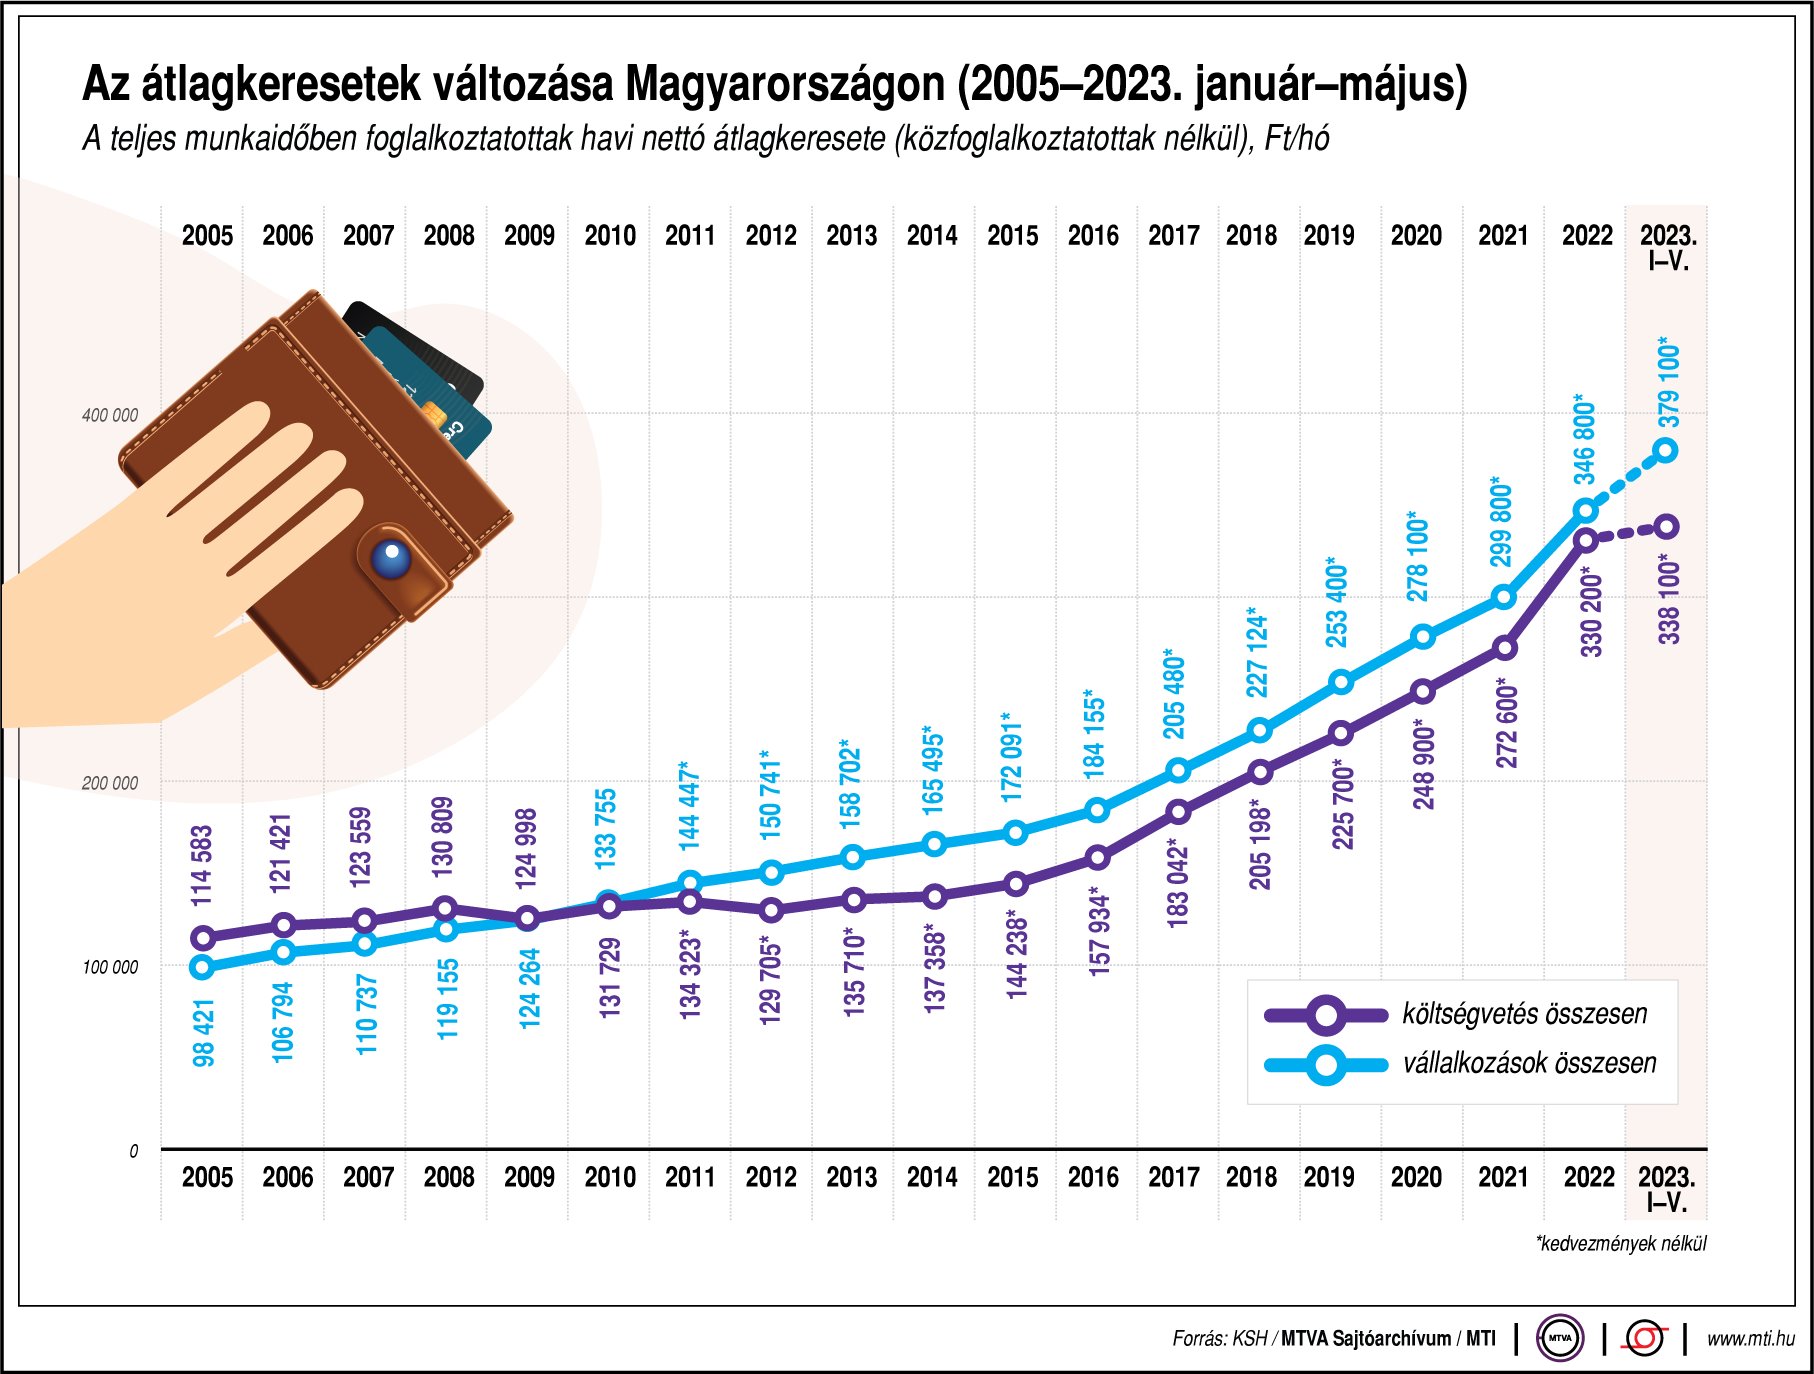 Az átlagkeresetek változása Magyarországon (2005-2023. január-május)